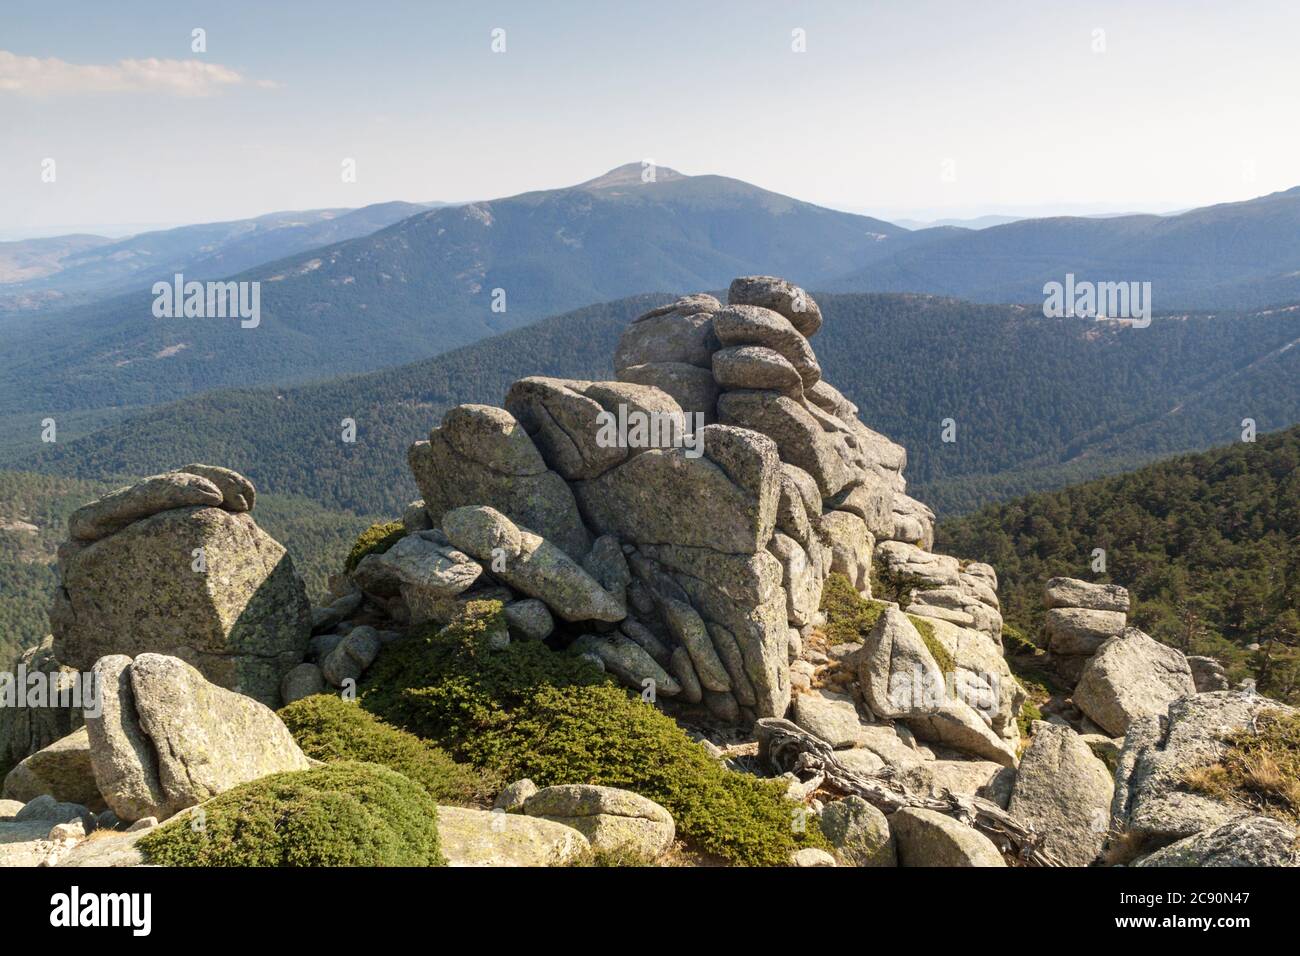 Montañas y bosques de siete Picos en el Parque Nacional Sierra de Guadarrama. Madrid y Segovia. Rocas y piedras erosionadas en la parte superior. Foto de stock